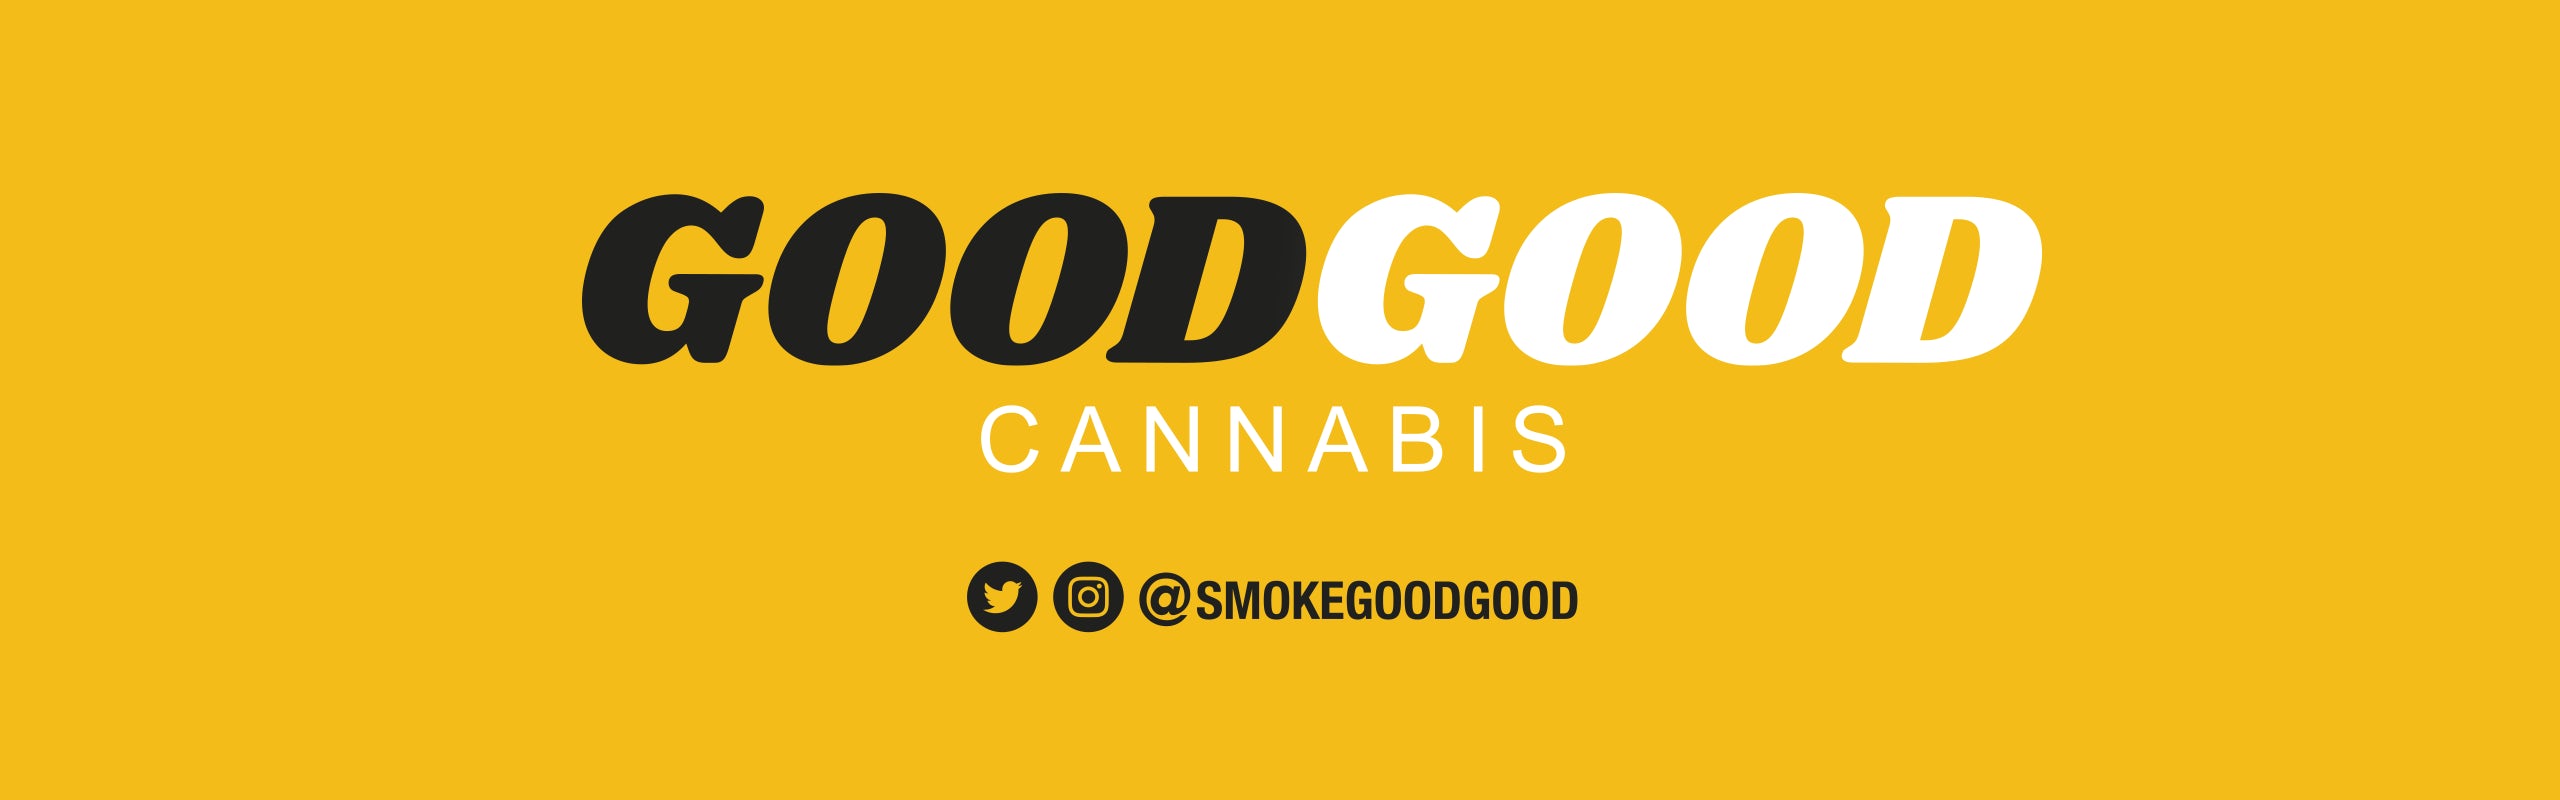 GoodGood Cannabis banner